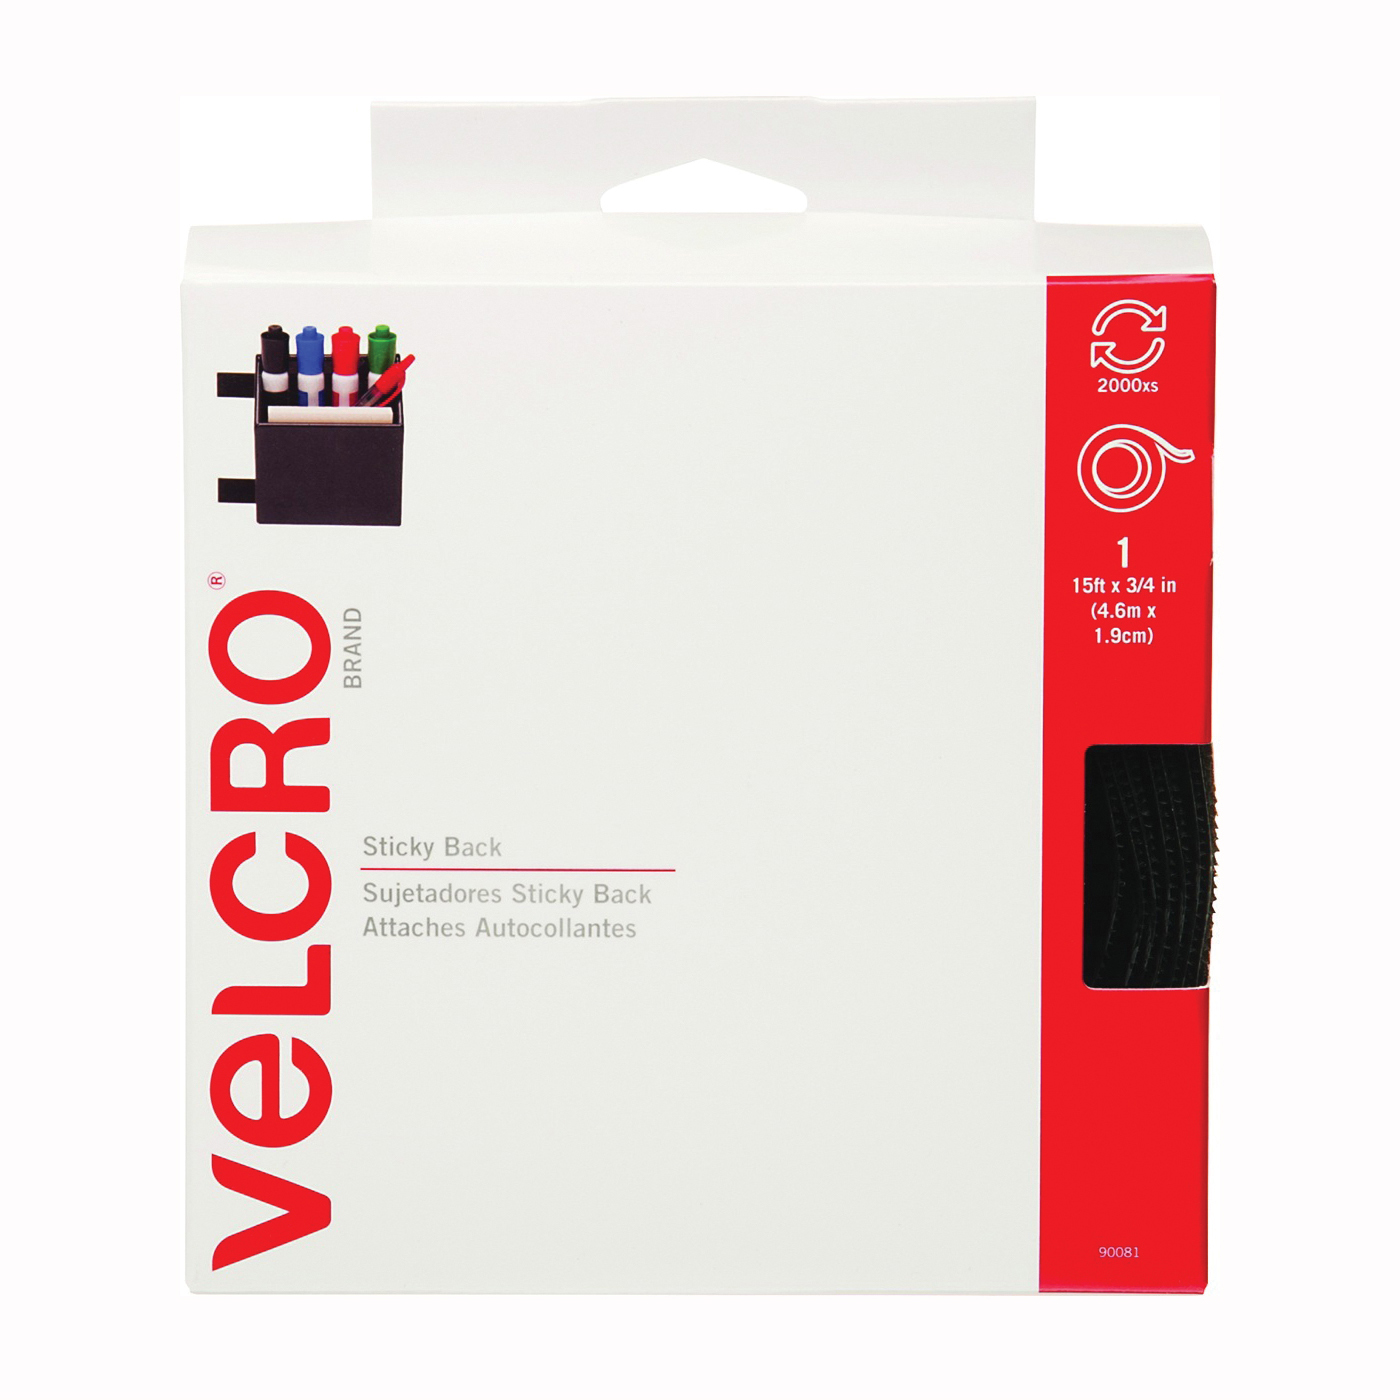 VELCRO Brand 